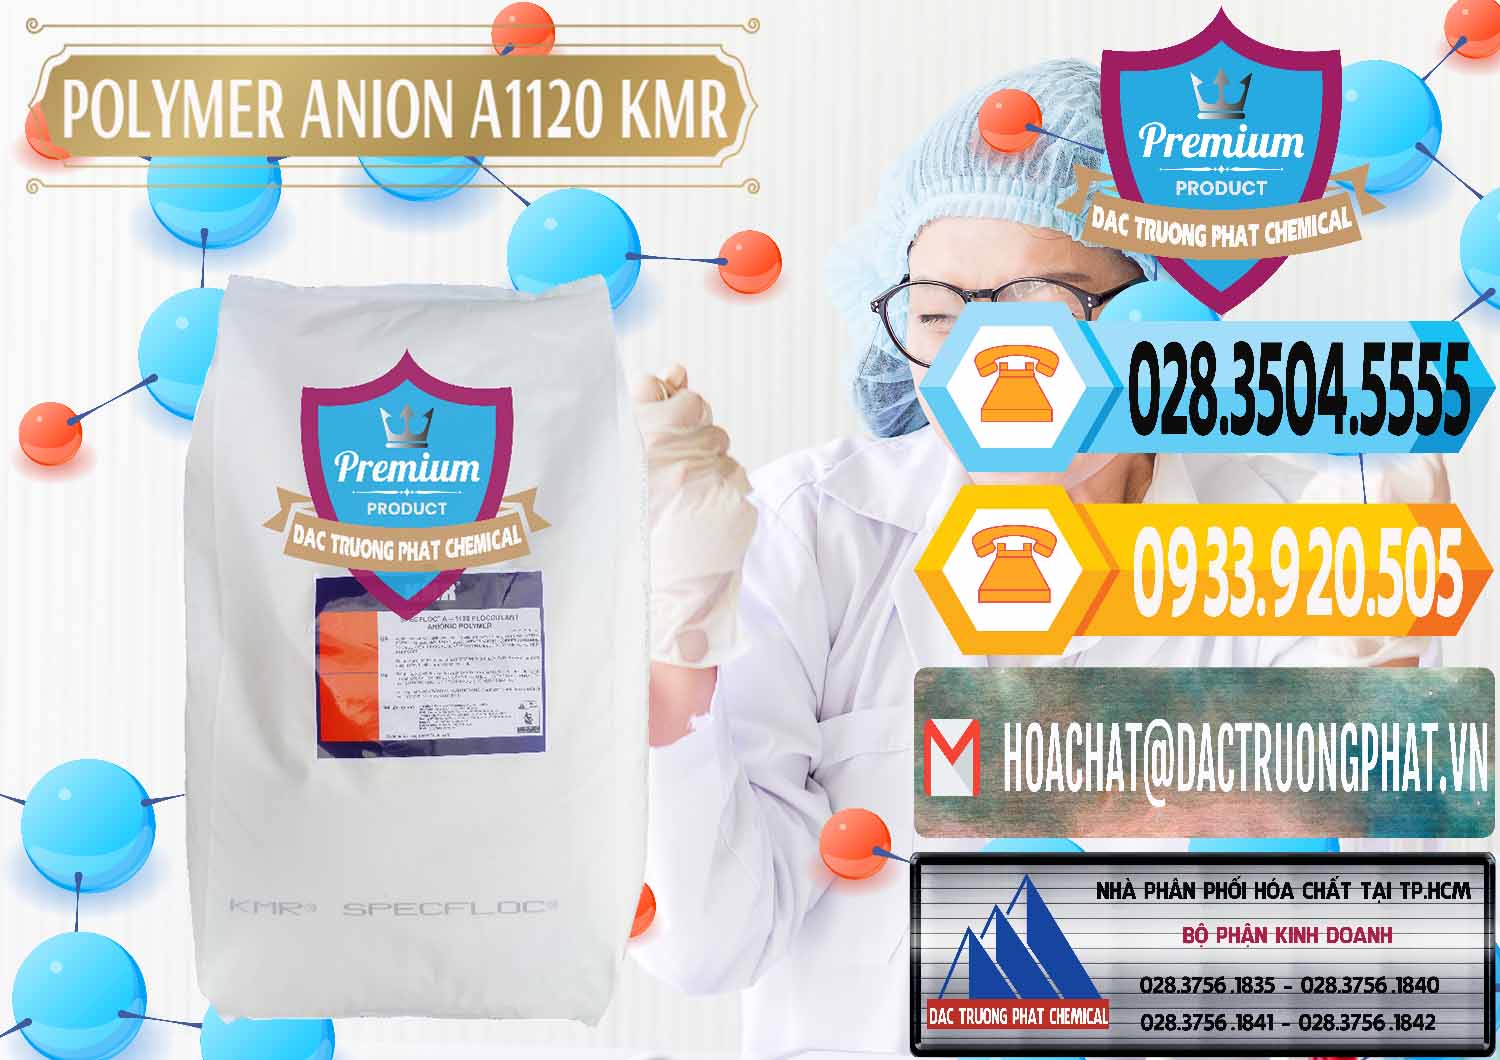 Nơi kinh doanh _ bán Polymer Anion A1120 - KMR Anh Quốc England - 0119 - Phân phối - kinh doanh hóa chất tại TP.HCM - hoachattayrua.net